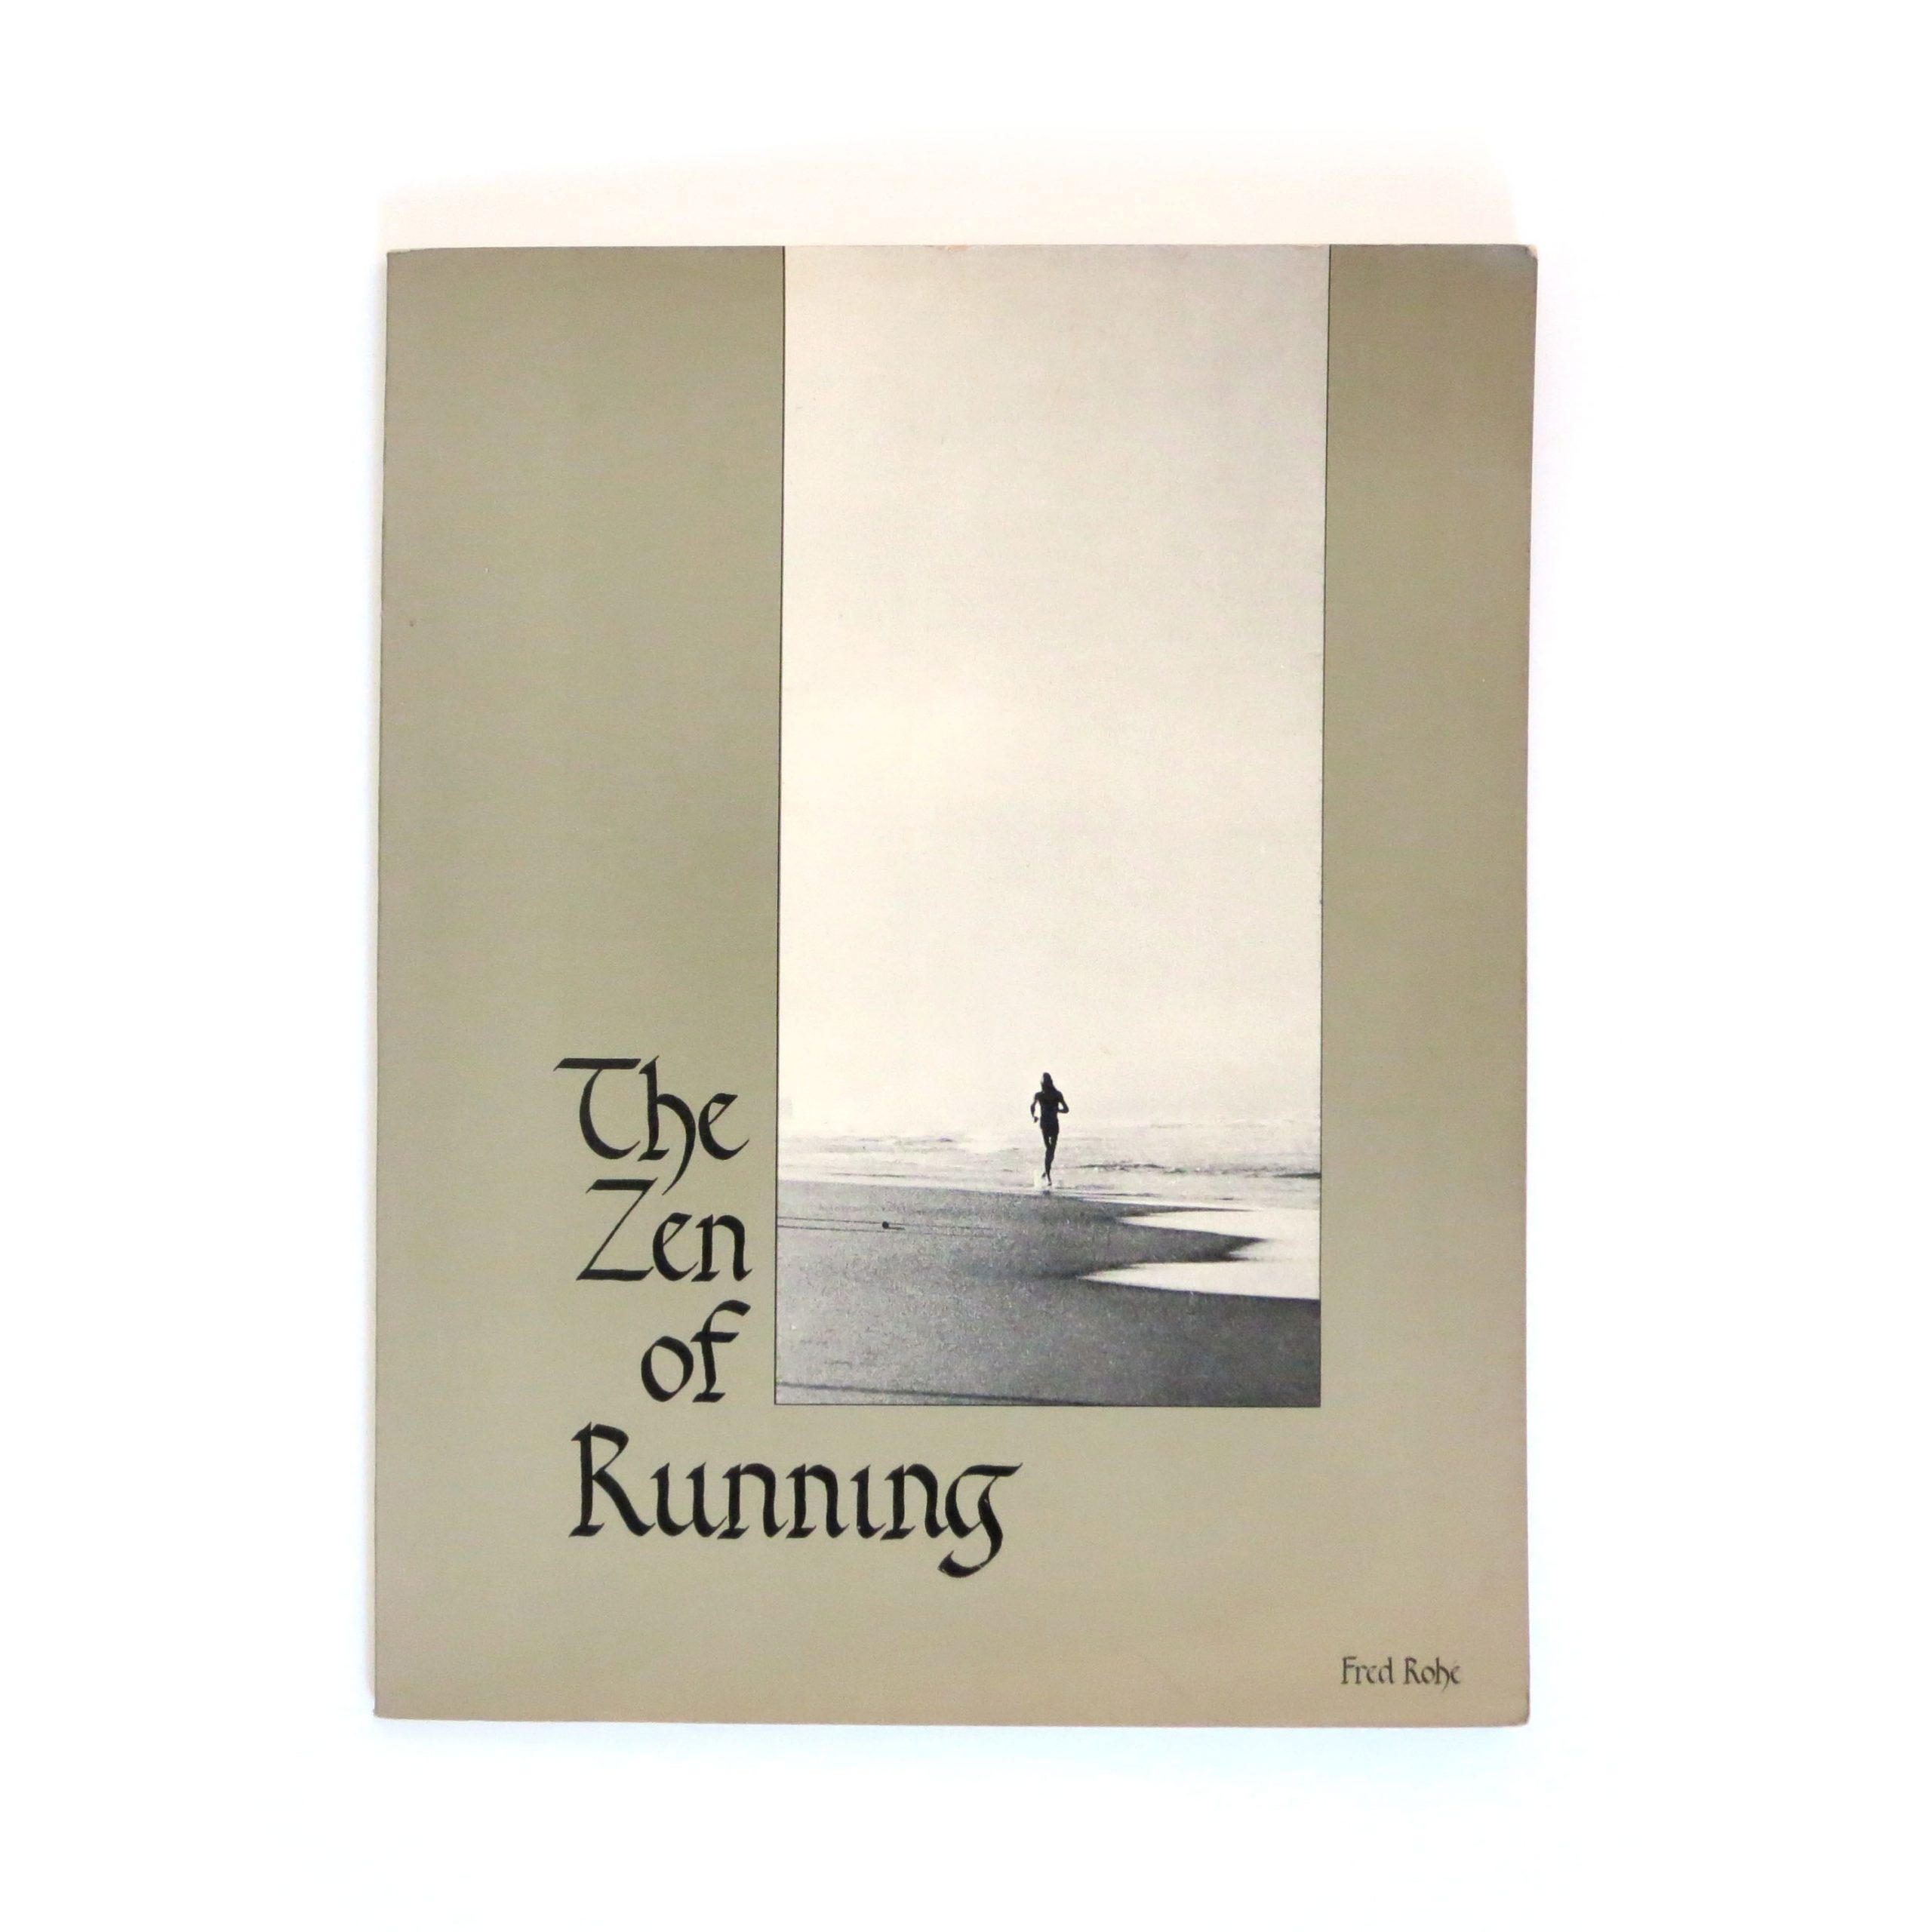 The Zen of Running (c. 1975)